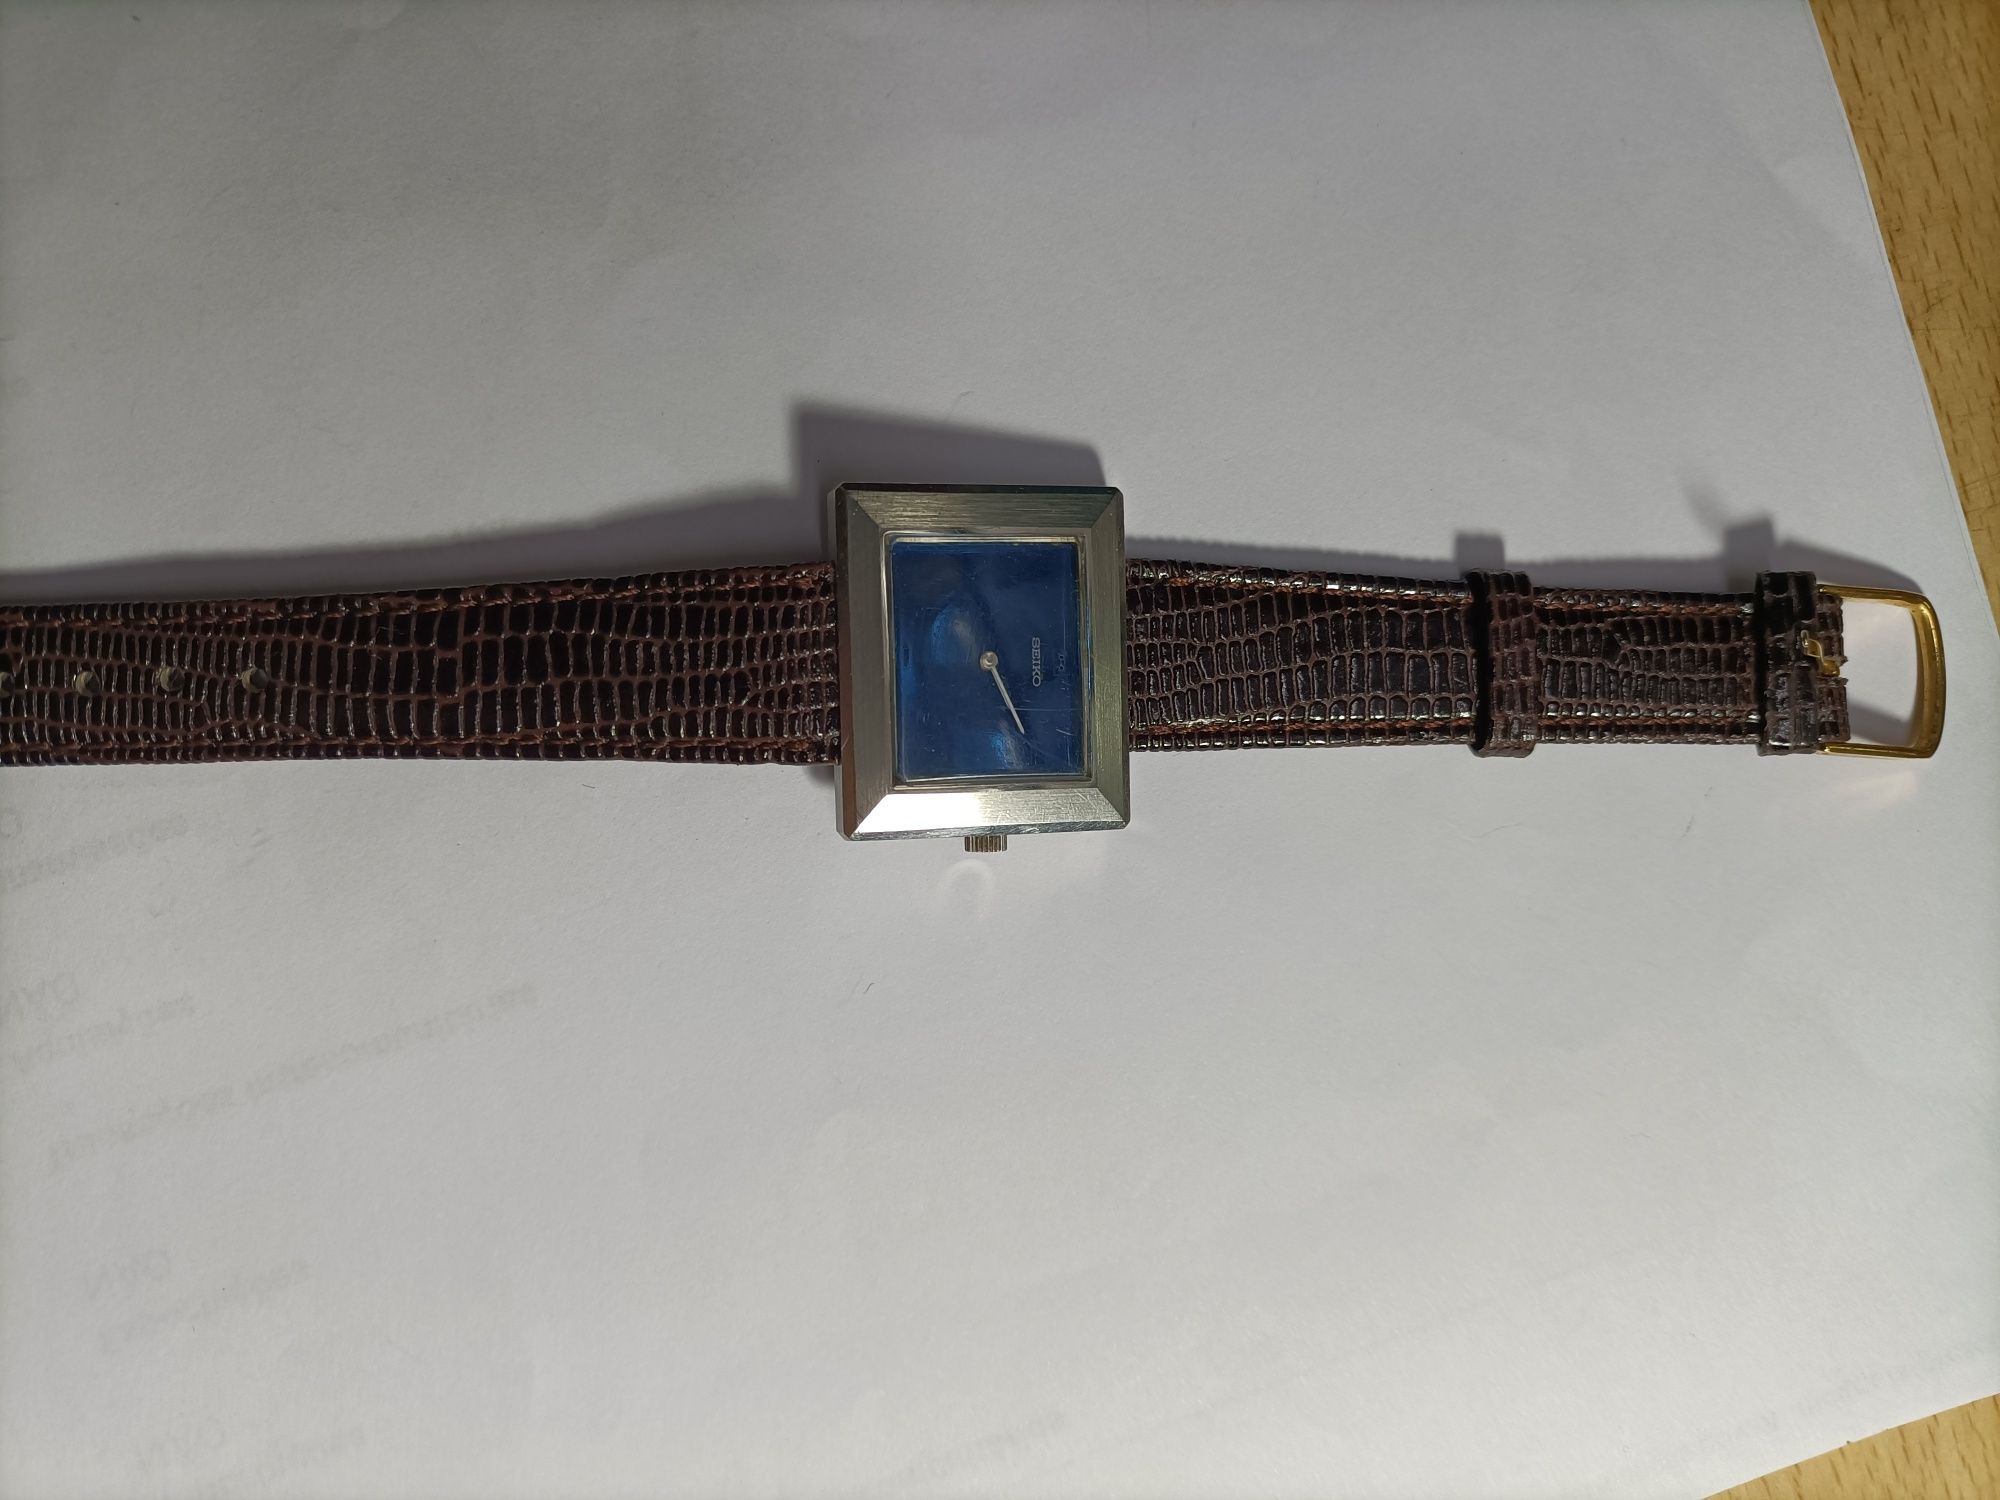 Relógios de pulso de corda antigos vintage de homem e senhora